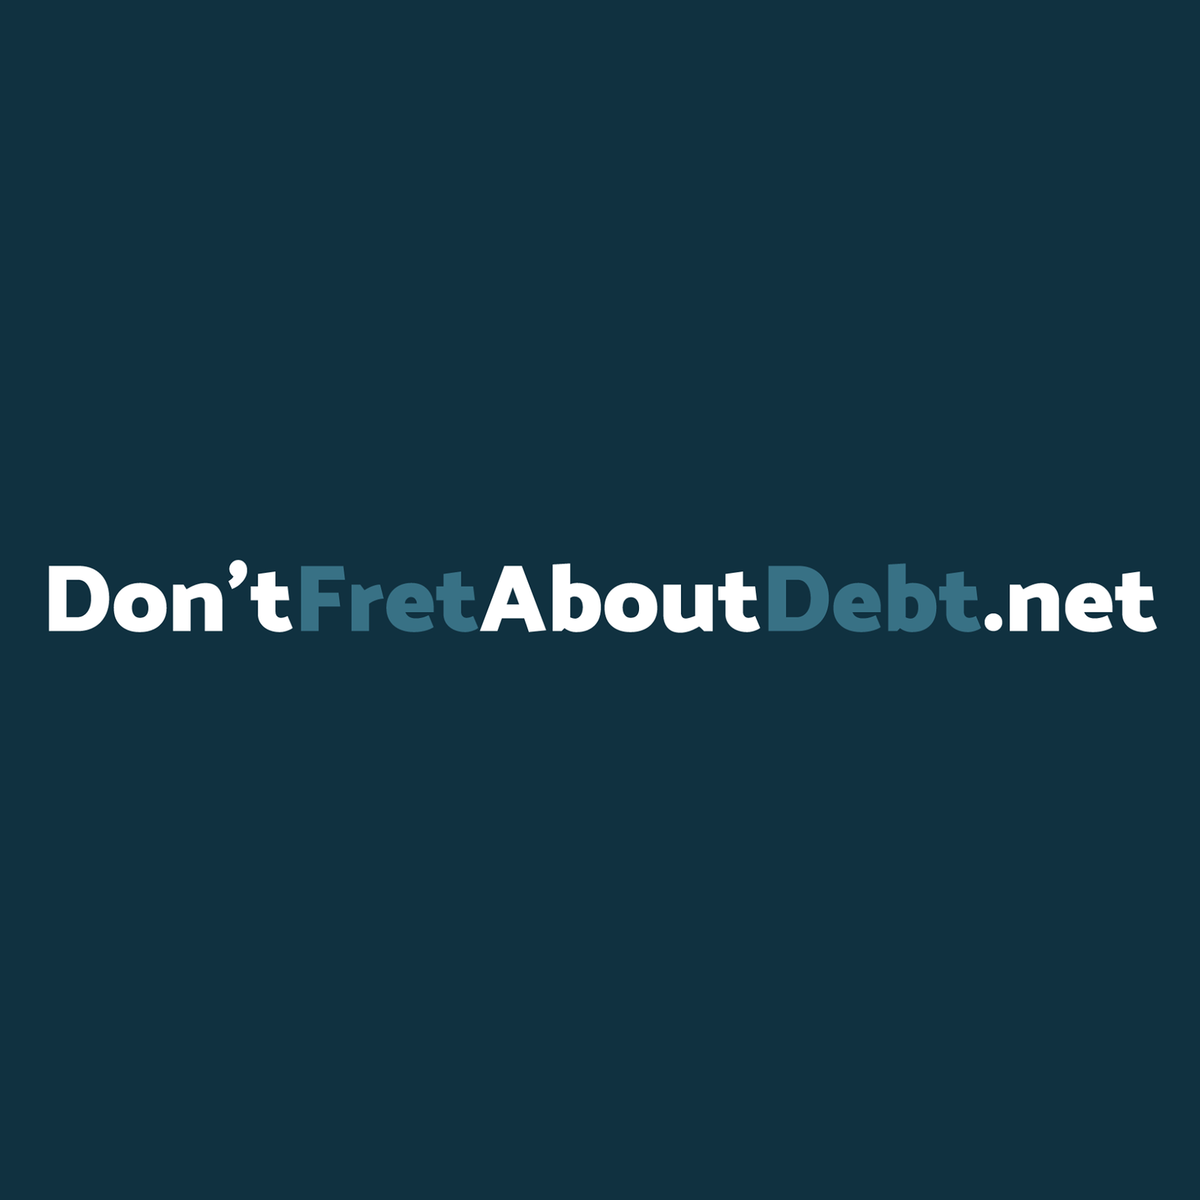 Logo of DontFretAboutDebt